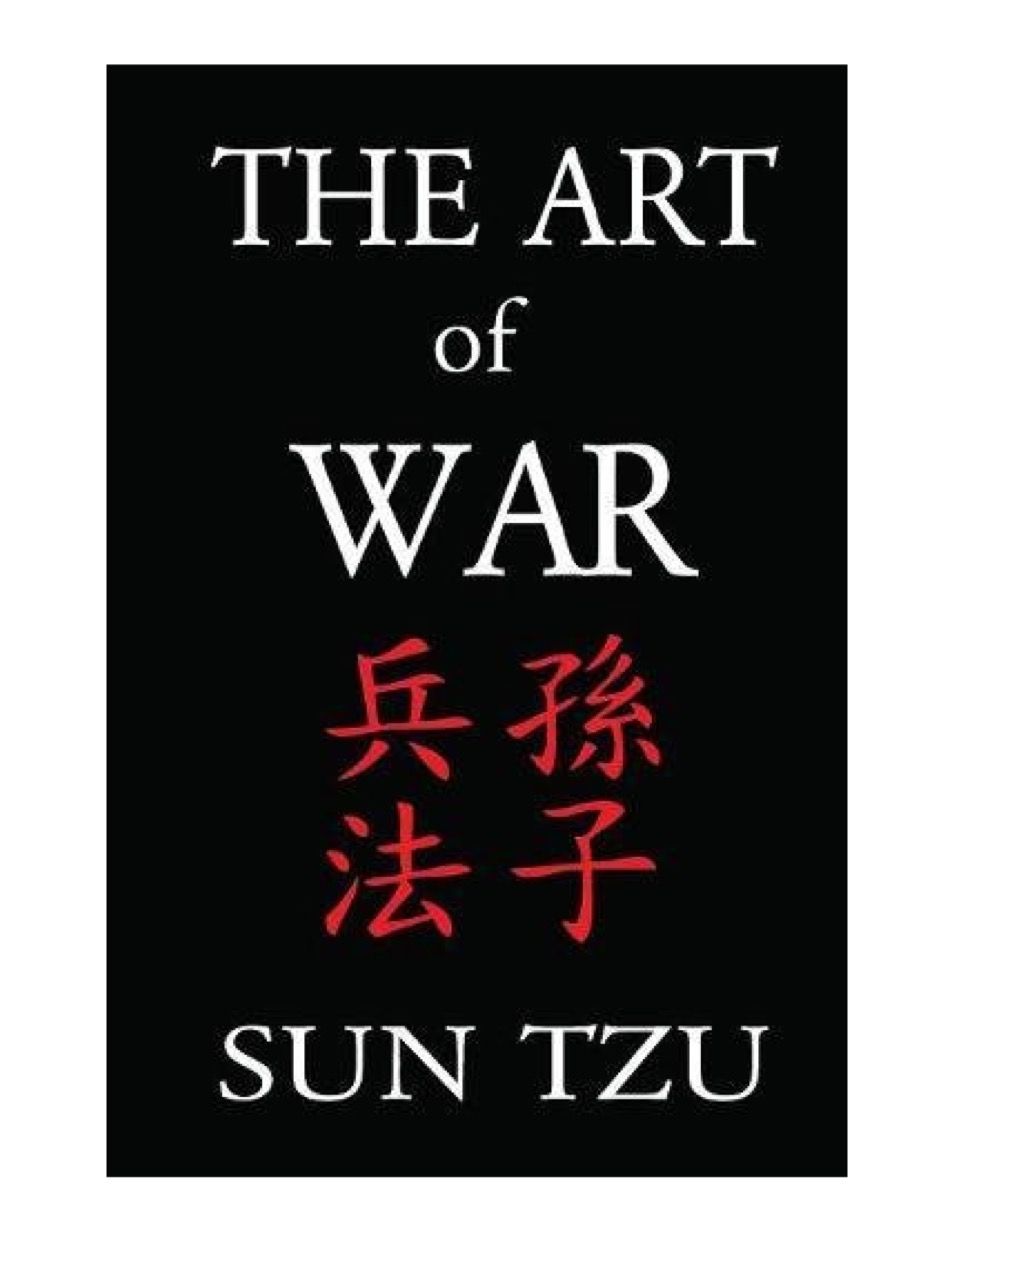 The Art of War, hvad man skal give op i 40